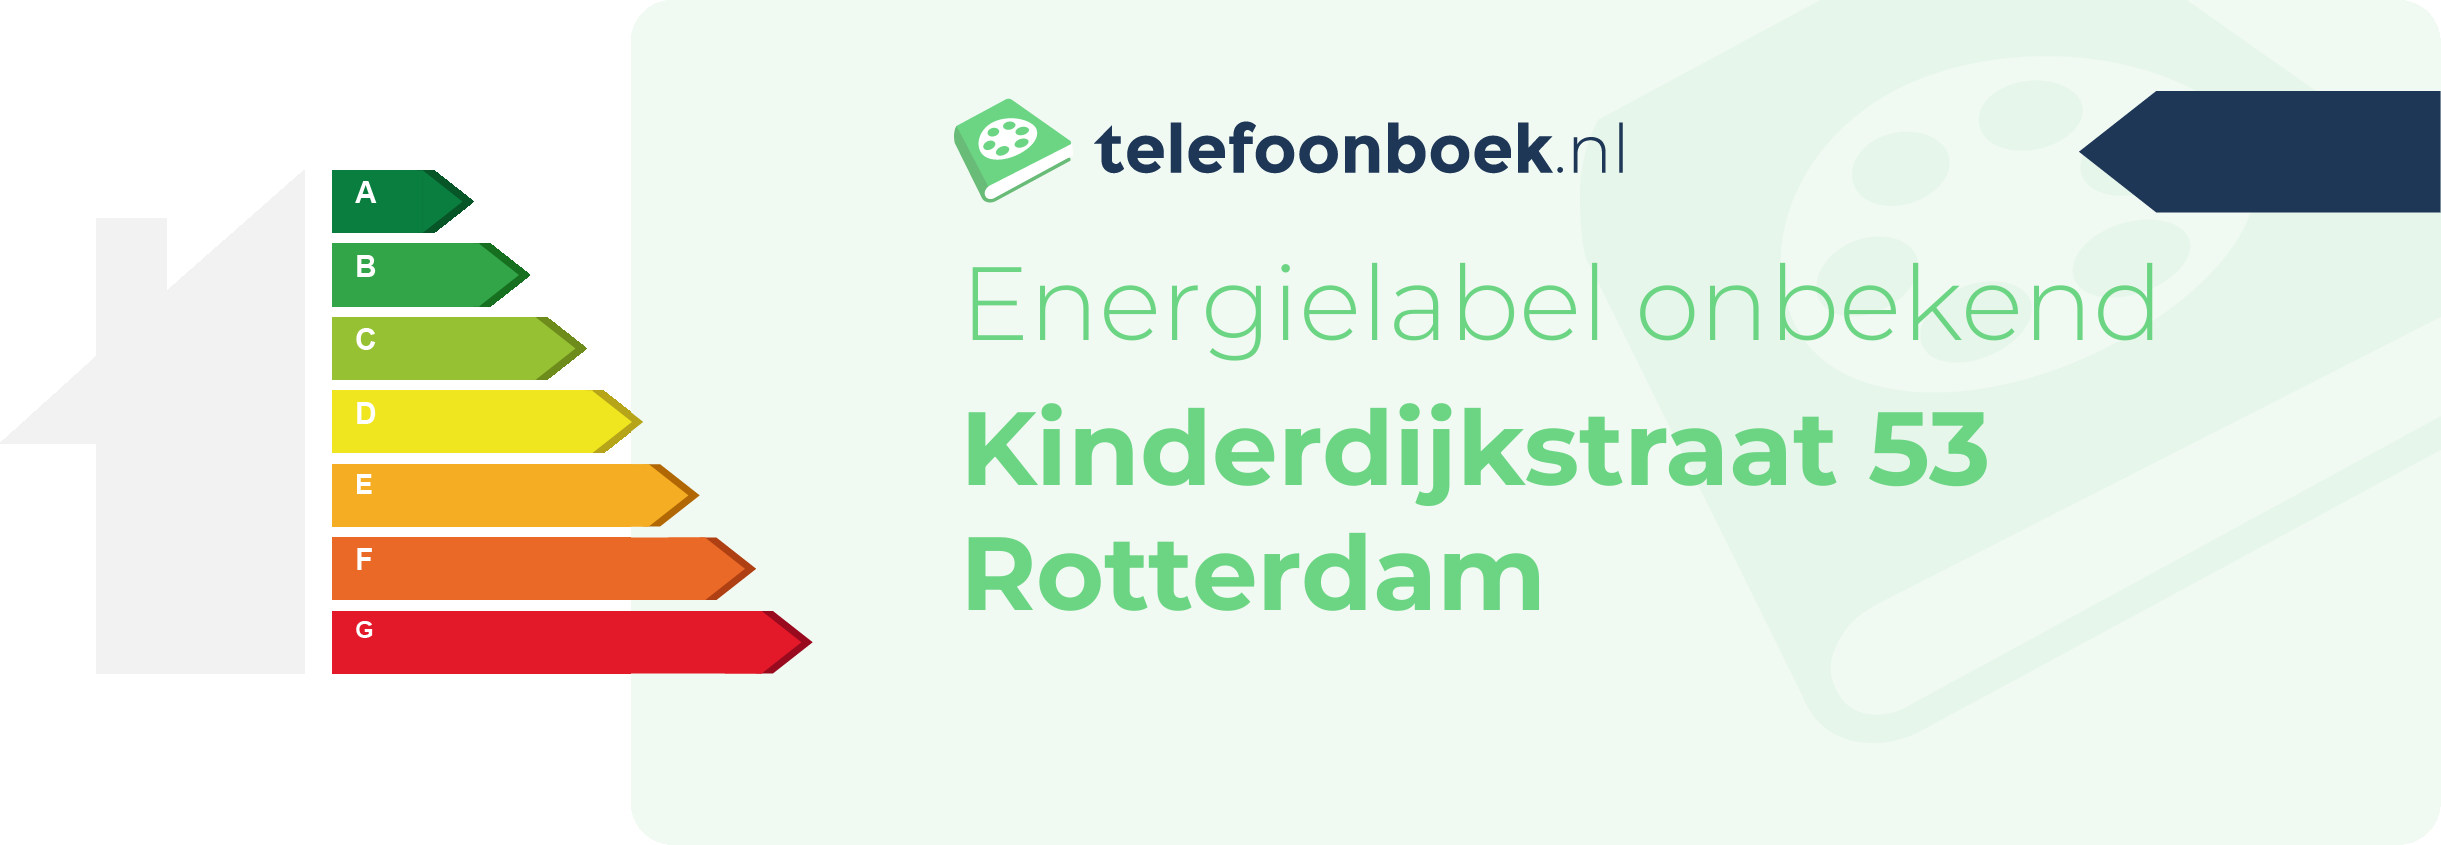 Energielabel Kinderdijkstraat 53 Rotterdam